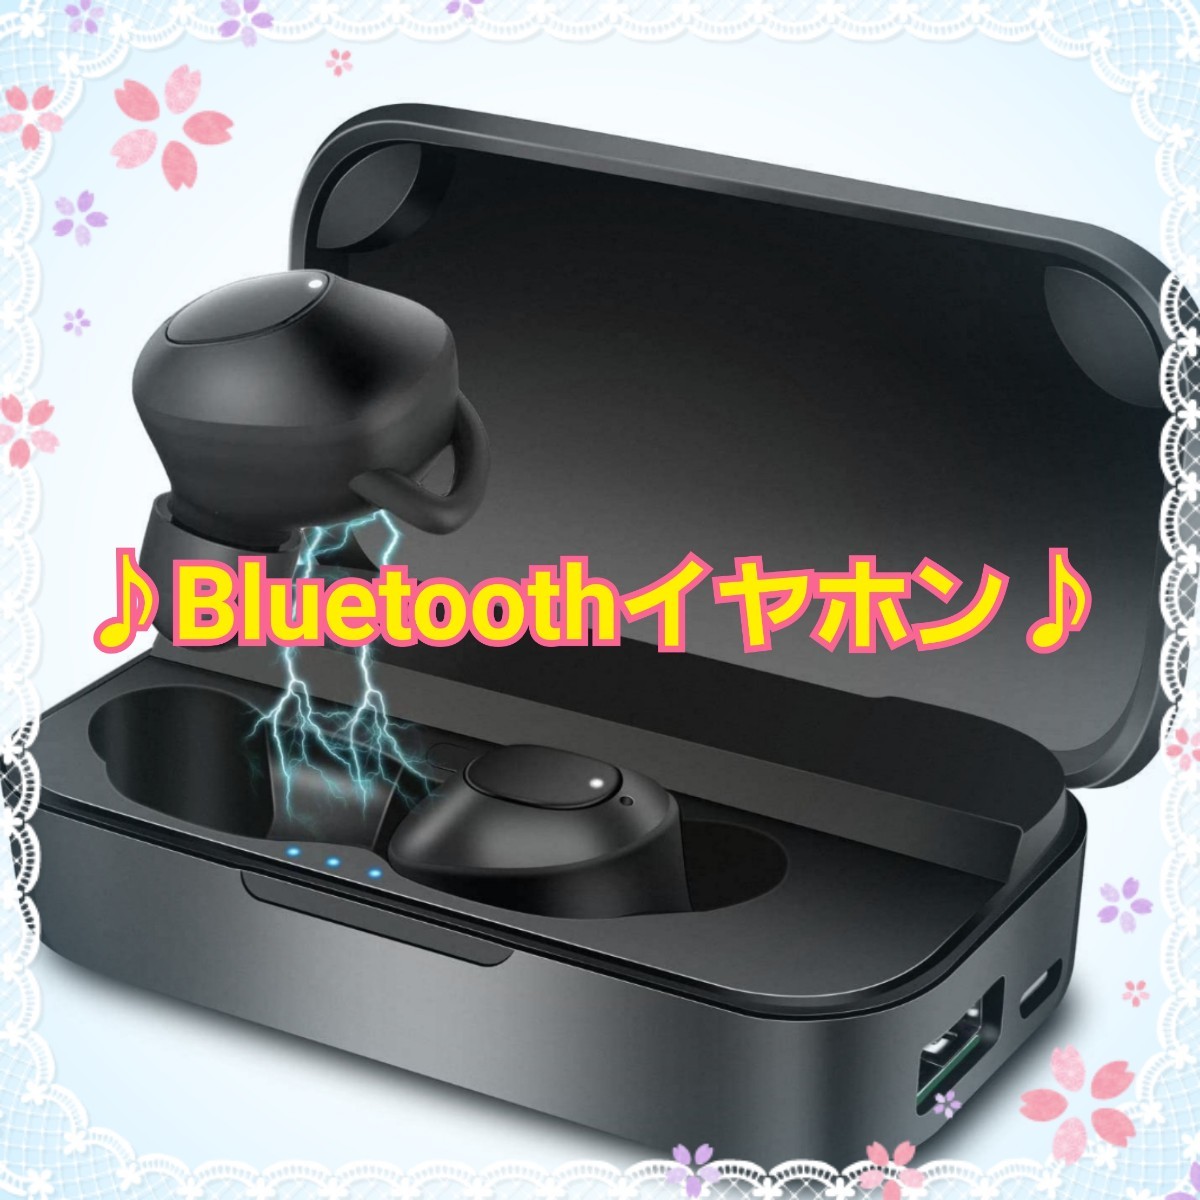 新品☆Riselight Bluetoothイヤホン ワイヤレスイヤホン ハンズフリー通話 USB付き 日本語説明書付き